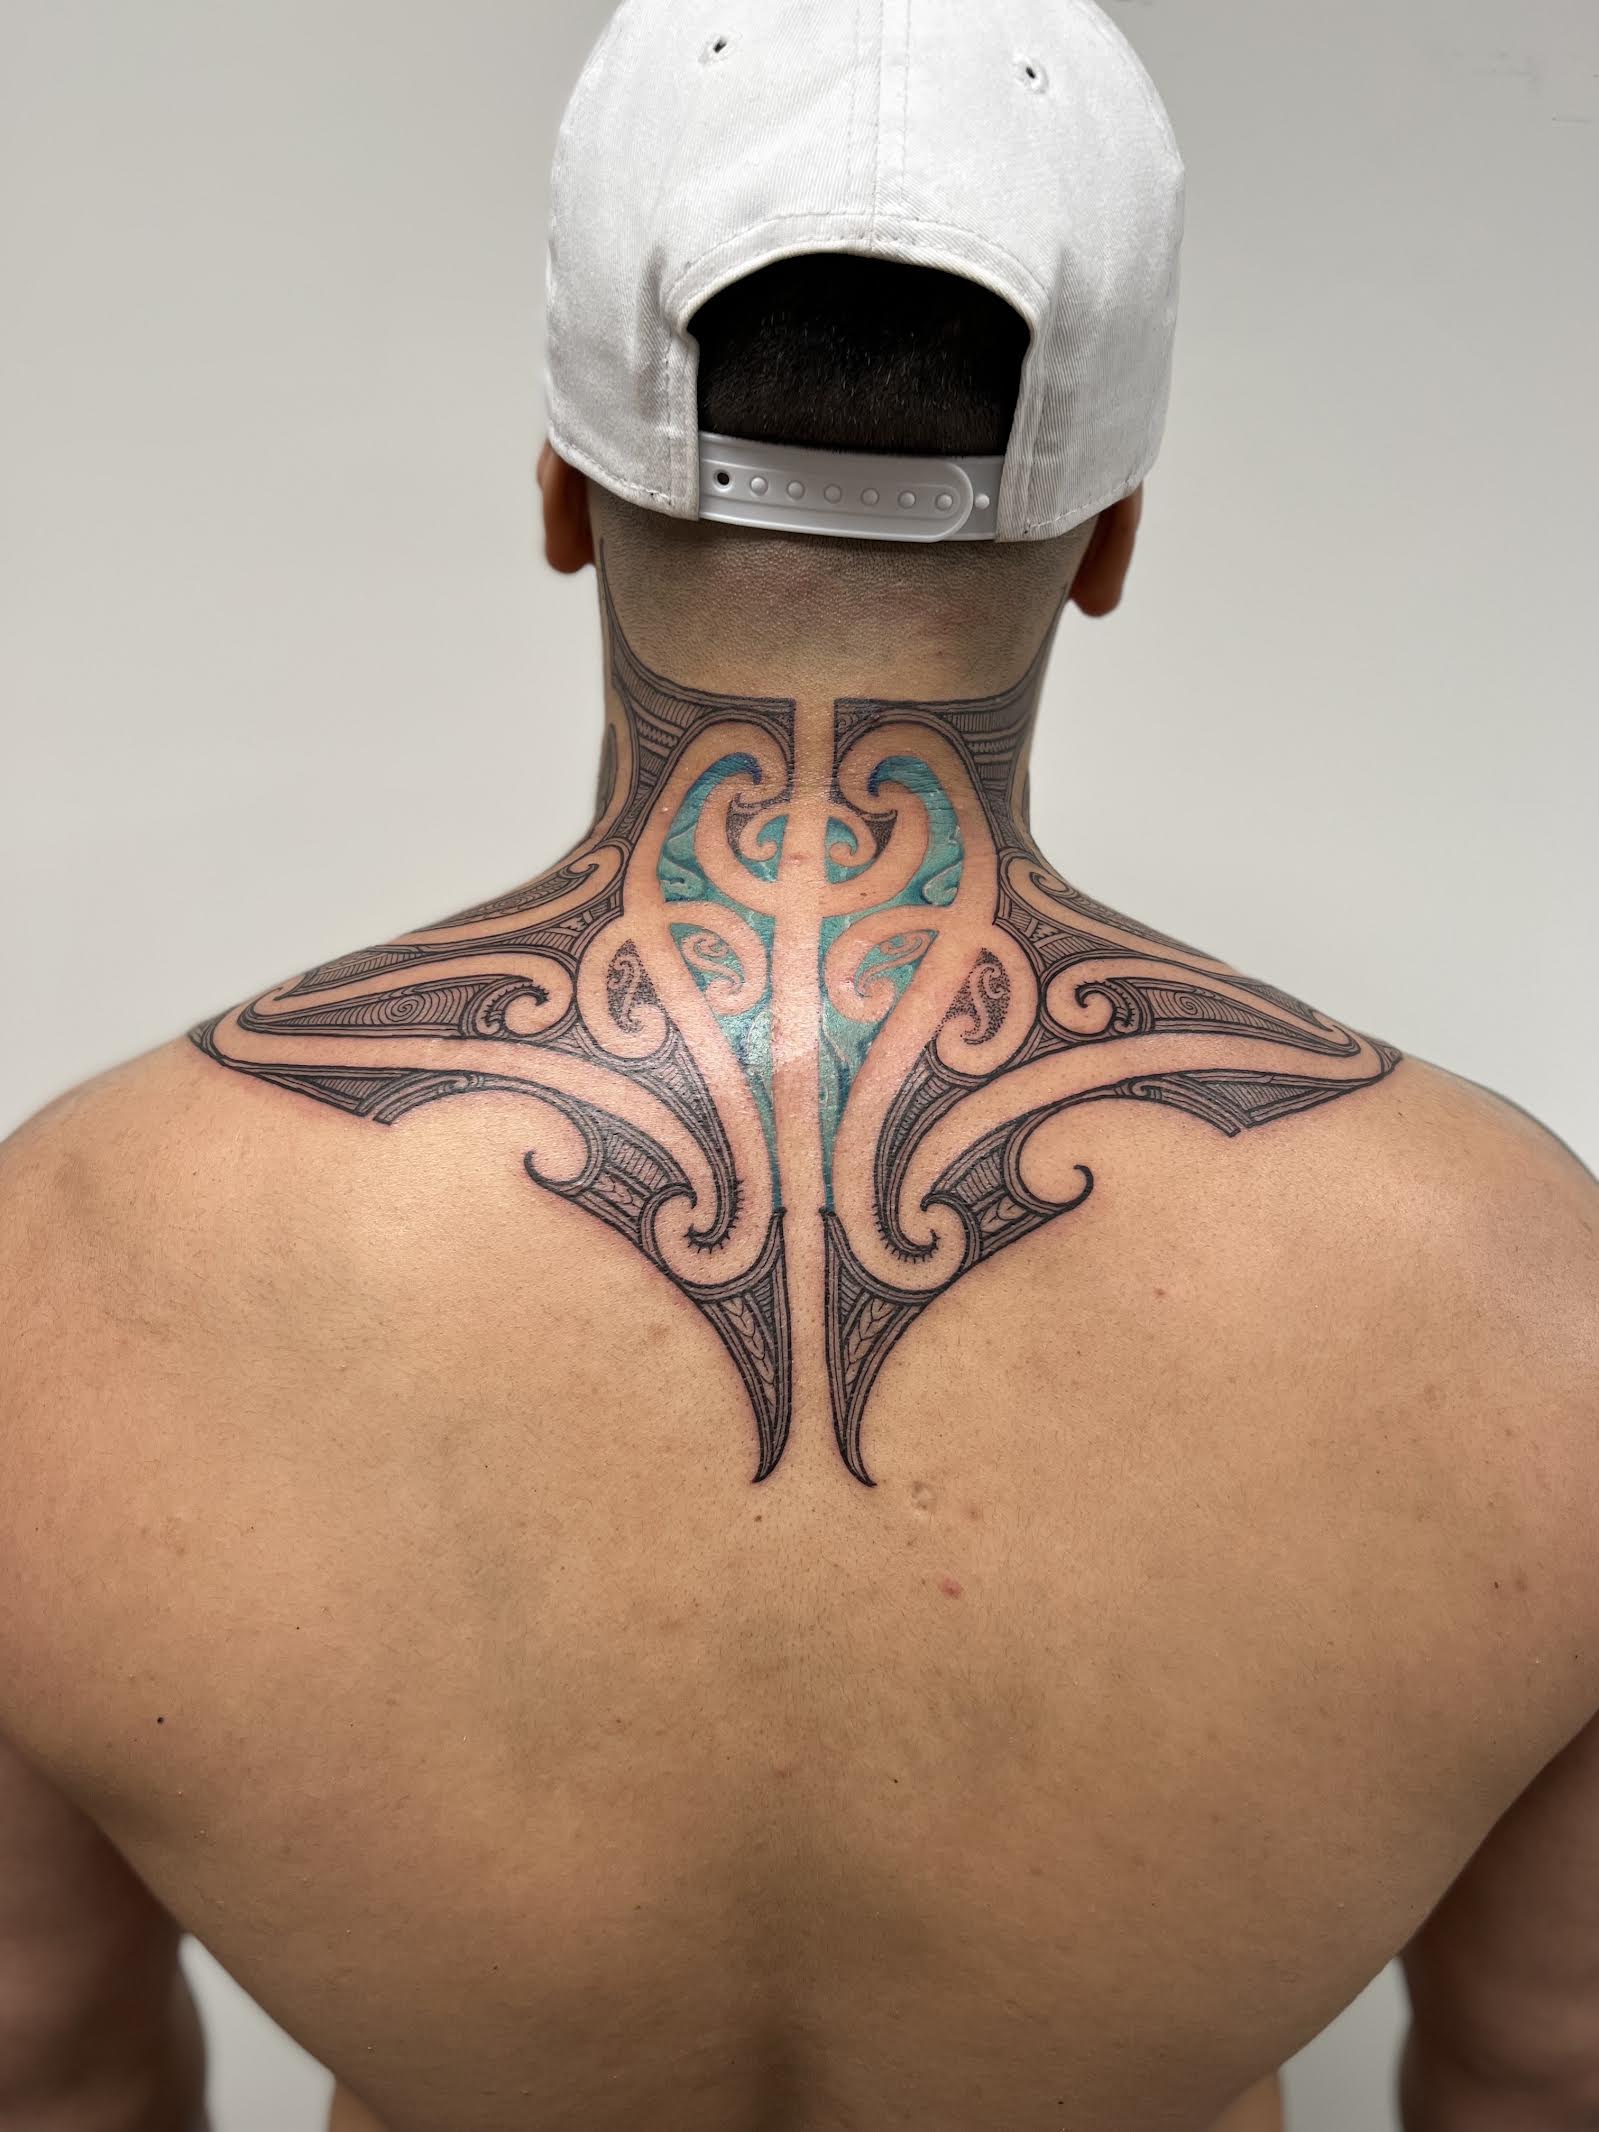 Ren - Ōtautahi Tattoo Queenstown Studio